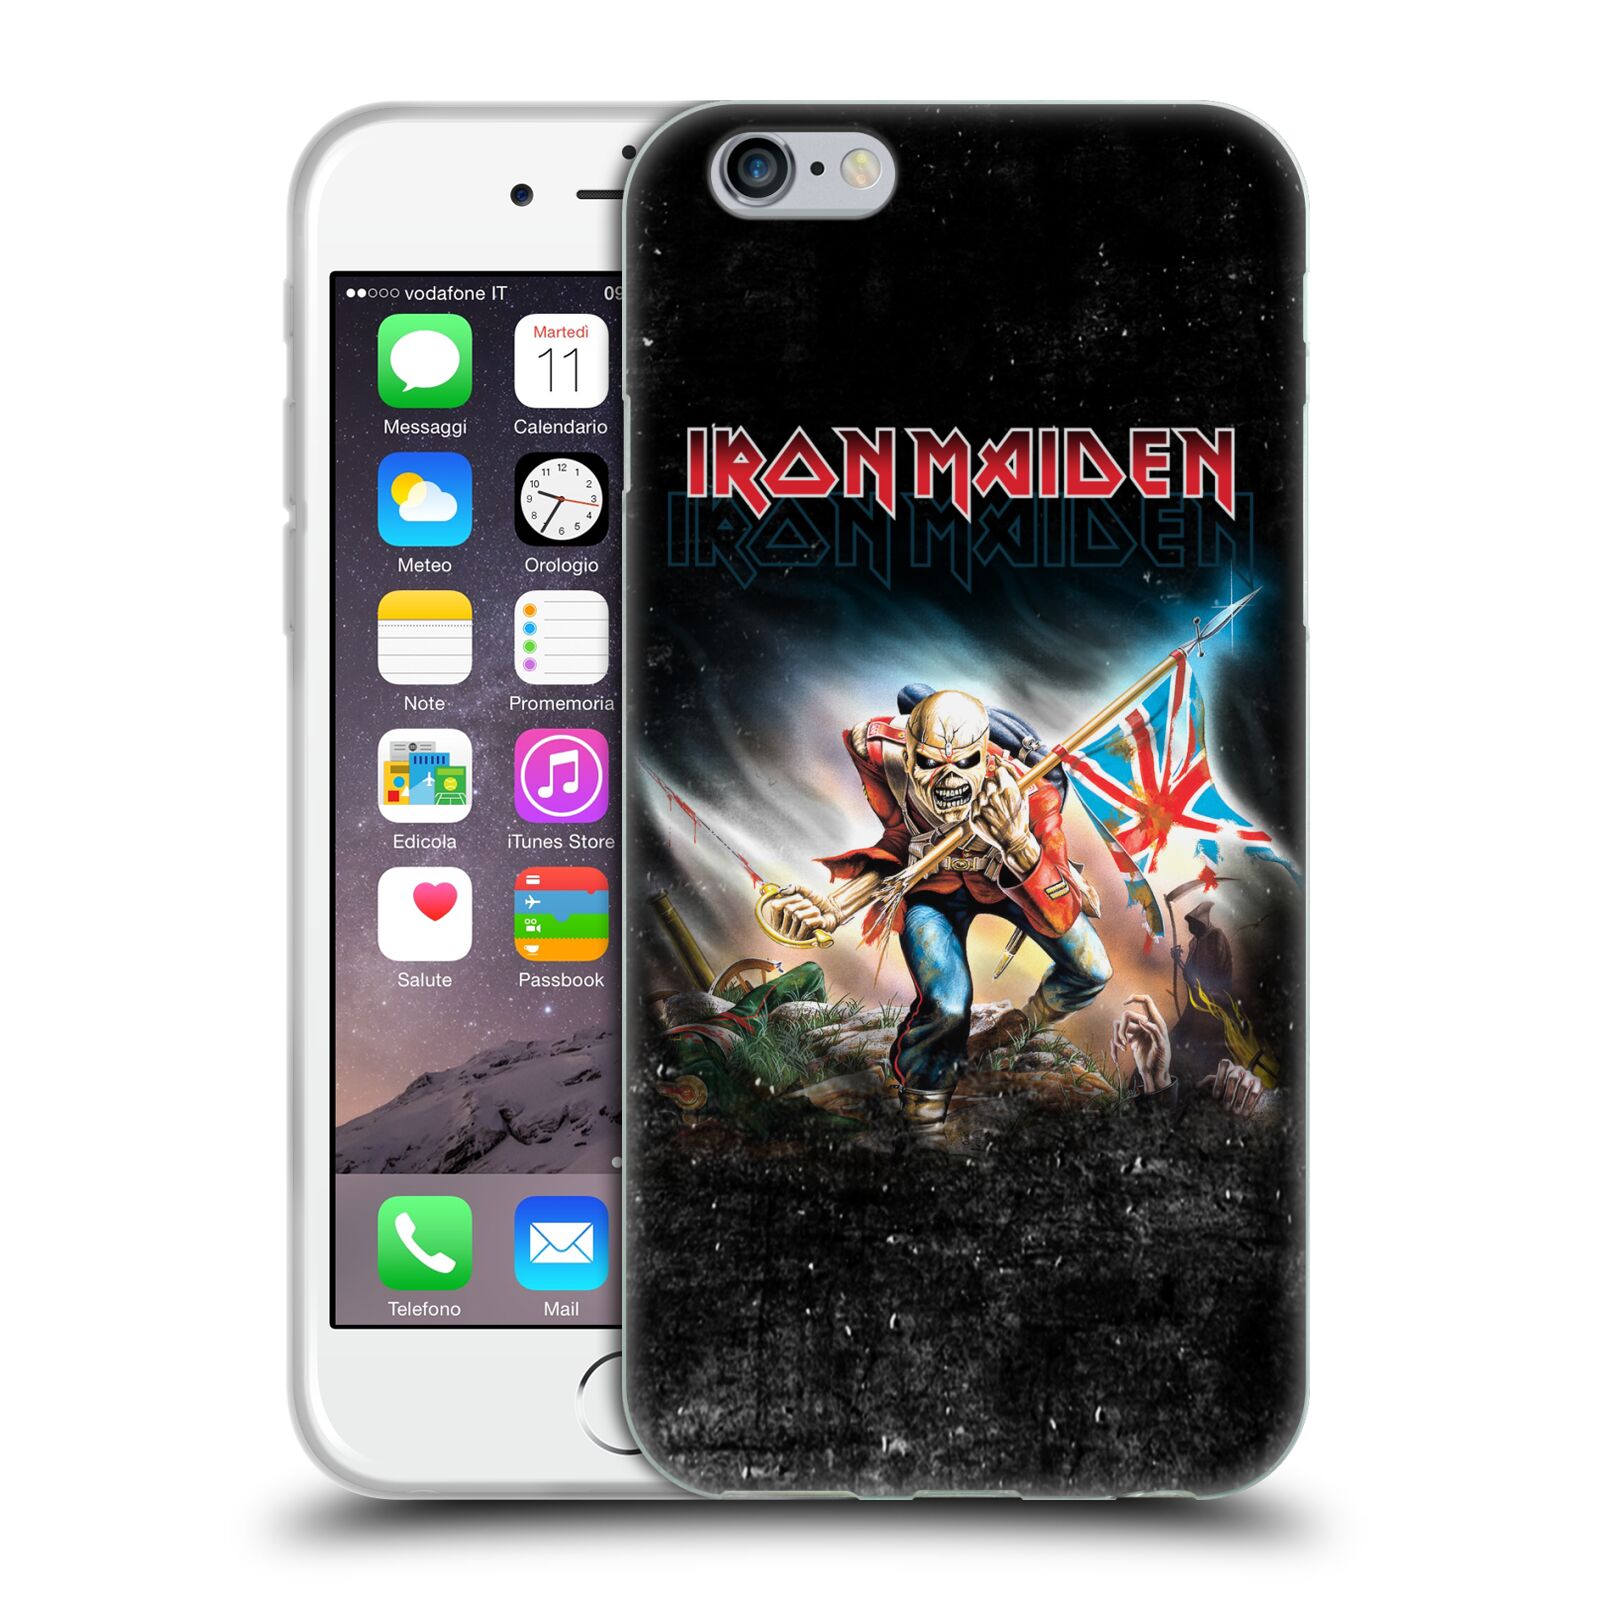 Silikonové pouzdro na mobil Apple iPhone 6 HEAD CASE - Iron Maiden - Trooper 2016 (Silikonový kryt či obal na mobilní telefon s licencovaným motivem Iron Maiden Apple iPhone 6)